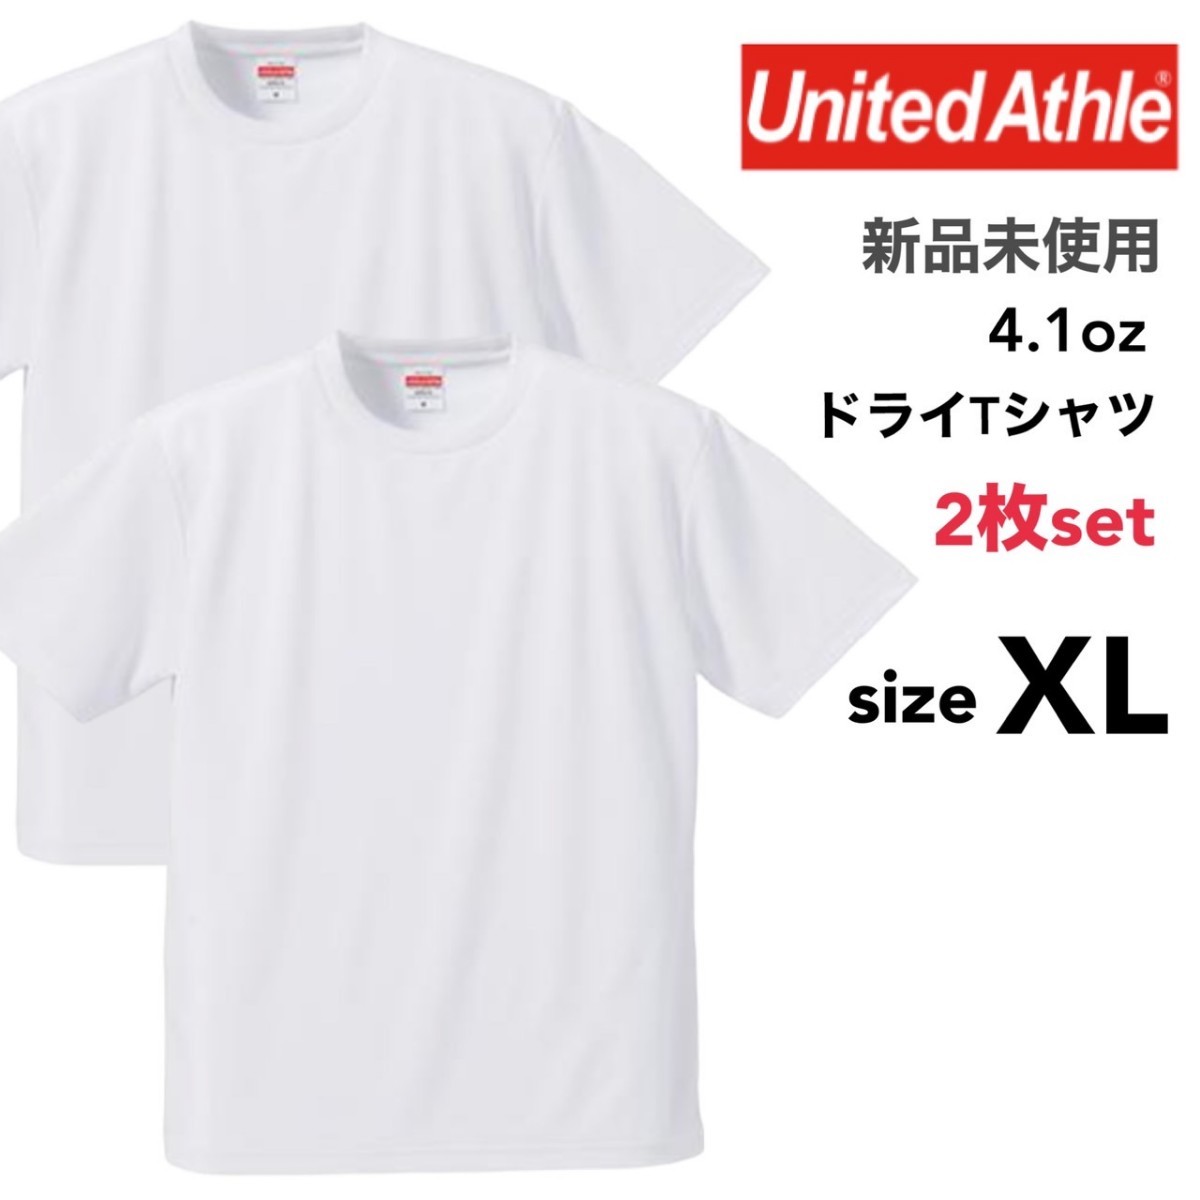 新品未使用 ユナイテッドアスレ ドライ アスレチック Tシャツ 白 ホワイト 2枚セット XLサイズ United Athle 590001 スポーツ_画像1